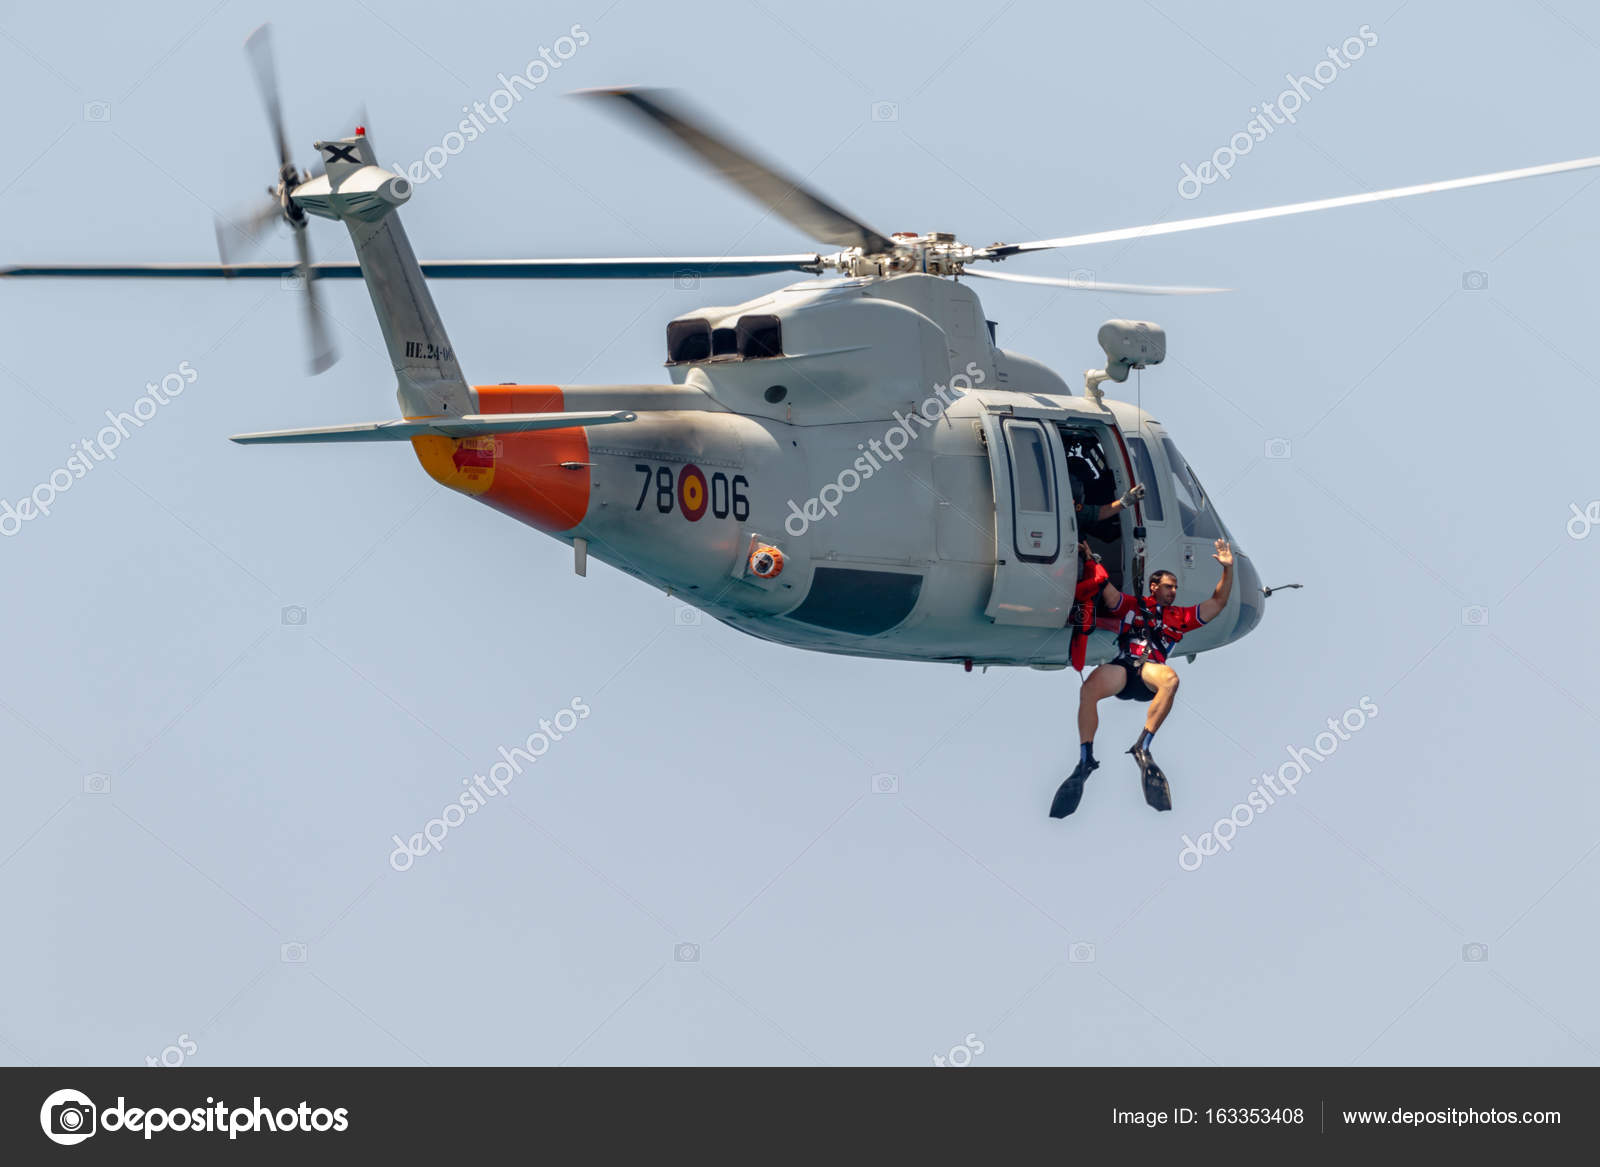 シコルスキー s-76 c ヘリコプターします。 - ストック編集用写真 ...1600 x 1167